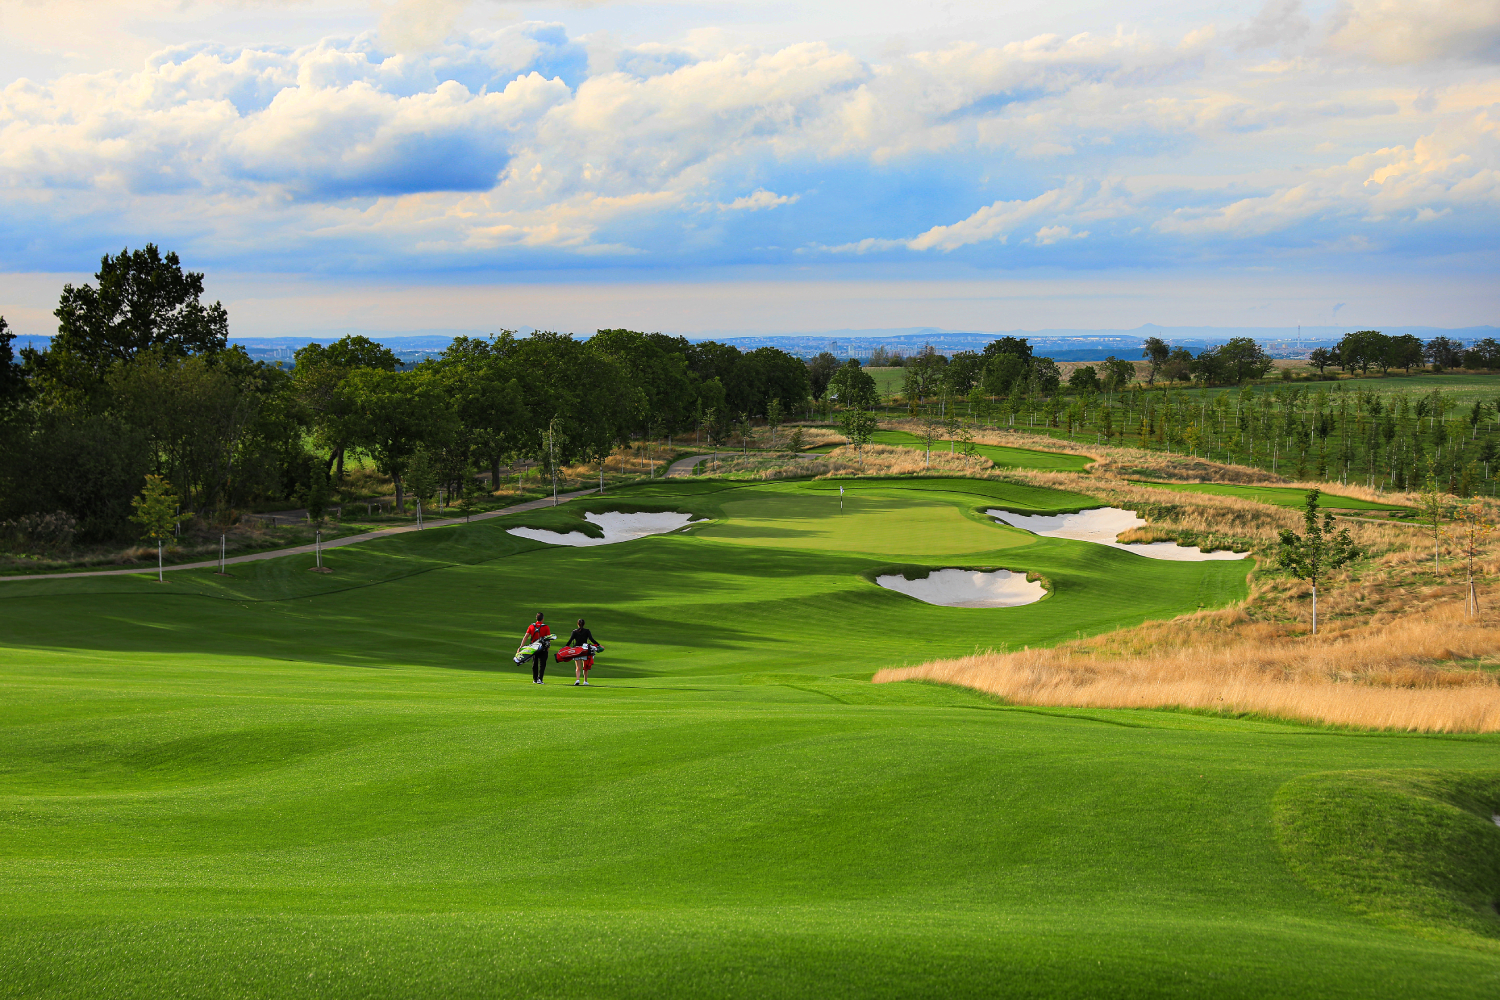 PGA National Czech Republic Oaks Prague uvolňuje k prodeji omezený počet členství a nabízí možnosti pro golfové privátní eventy